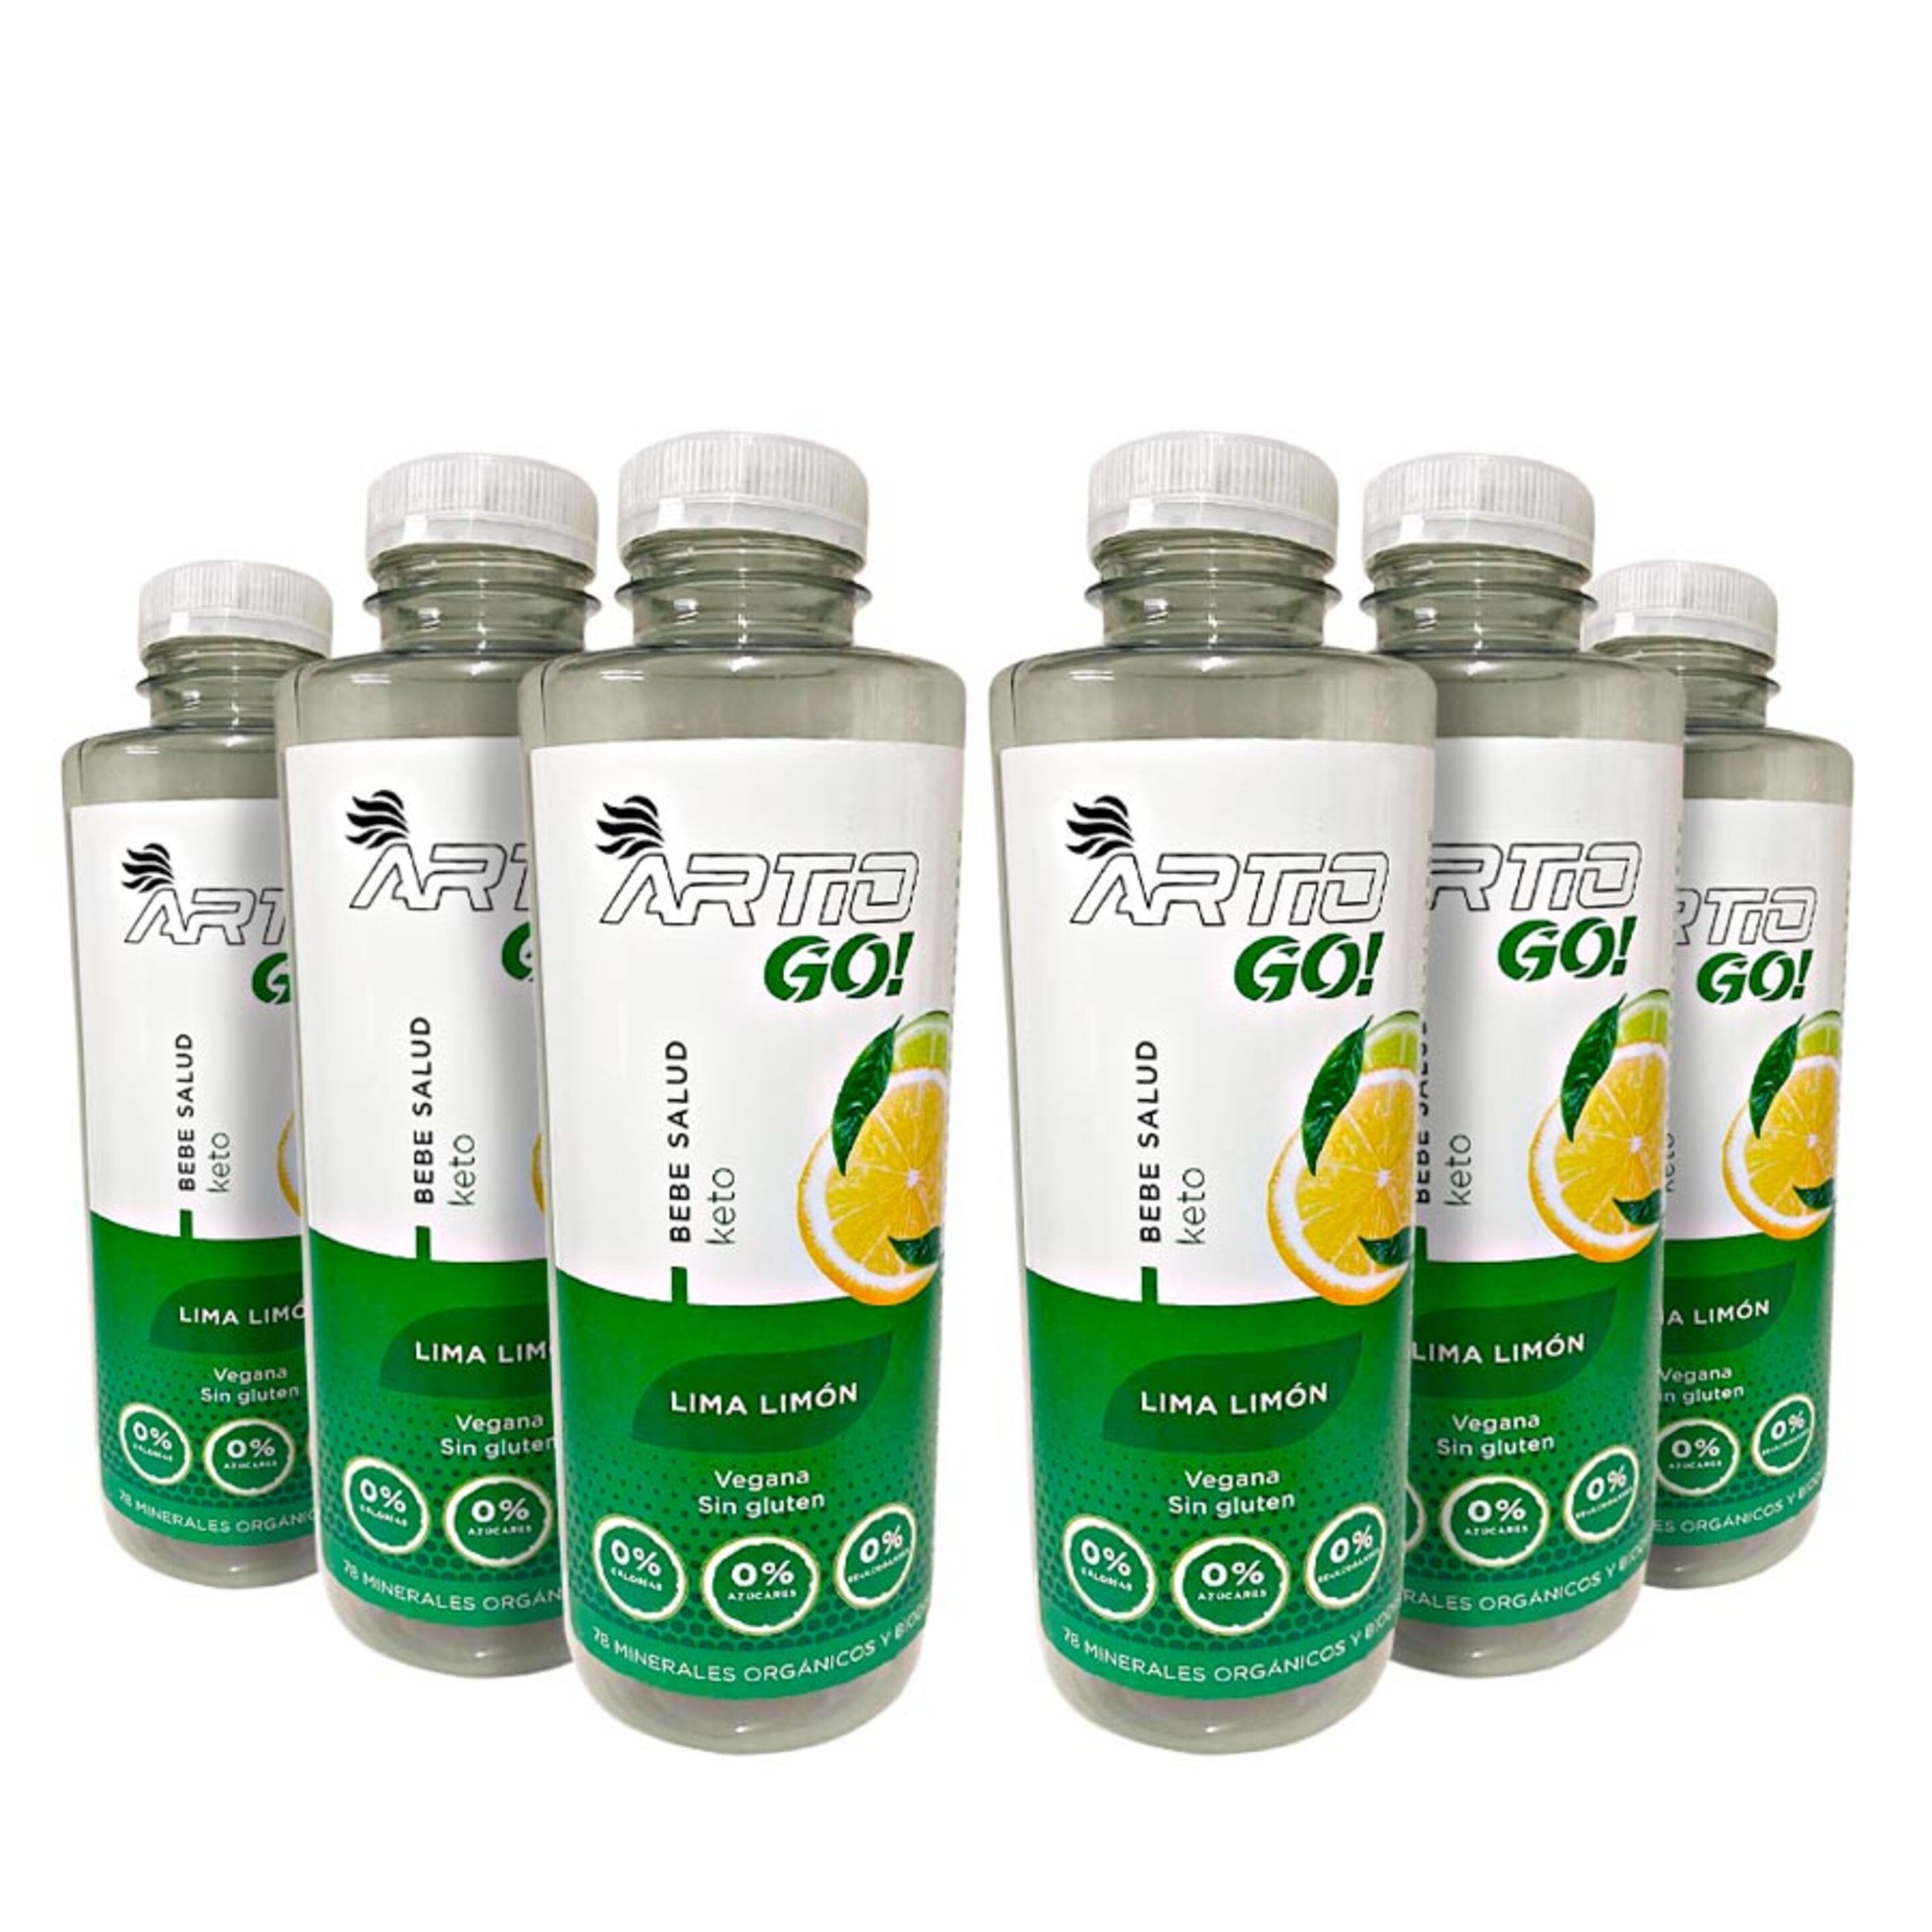 Bebida Isotónica Artio Go! Sabor Lima Limón | Pack De 6x500ml - Isotónico  MKP